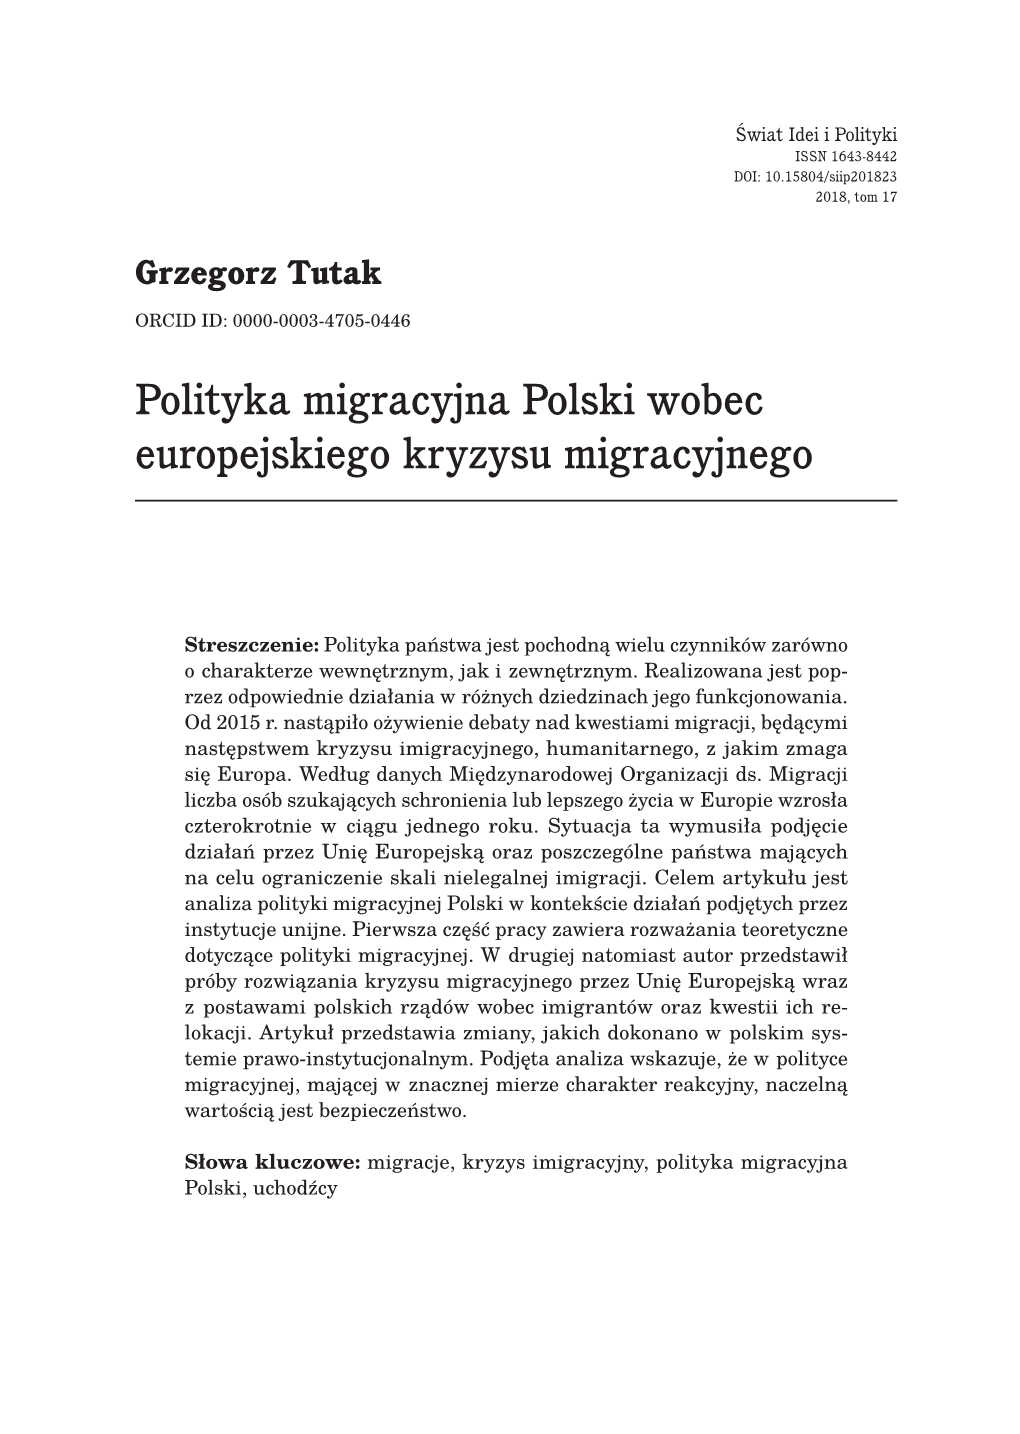 Polityka Migracyjna Polski Wobec Europejskiego Kryzysu Migracyjnego